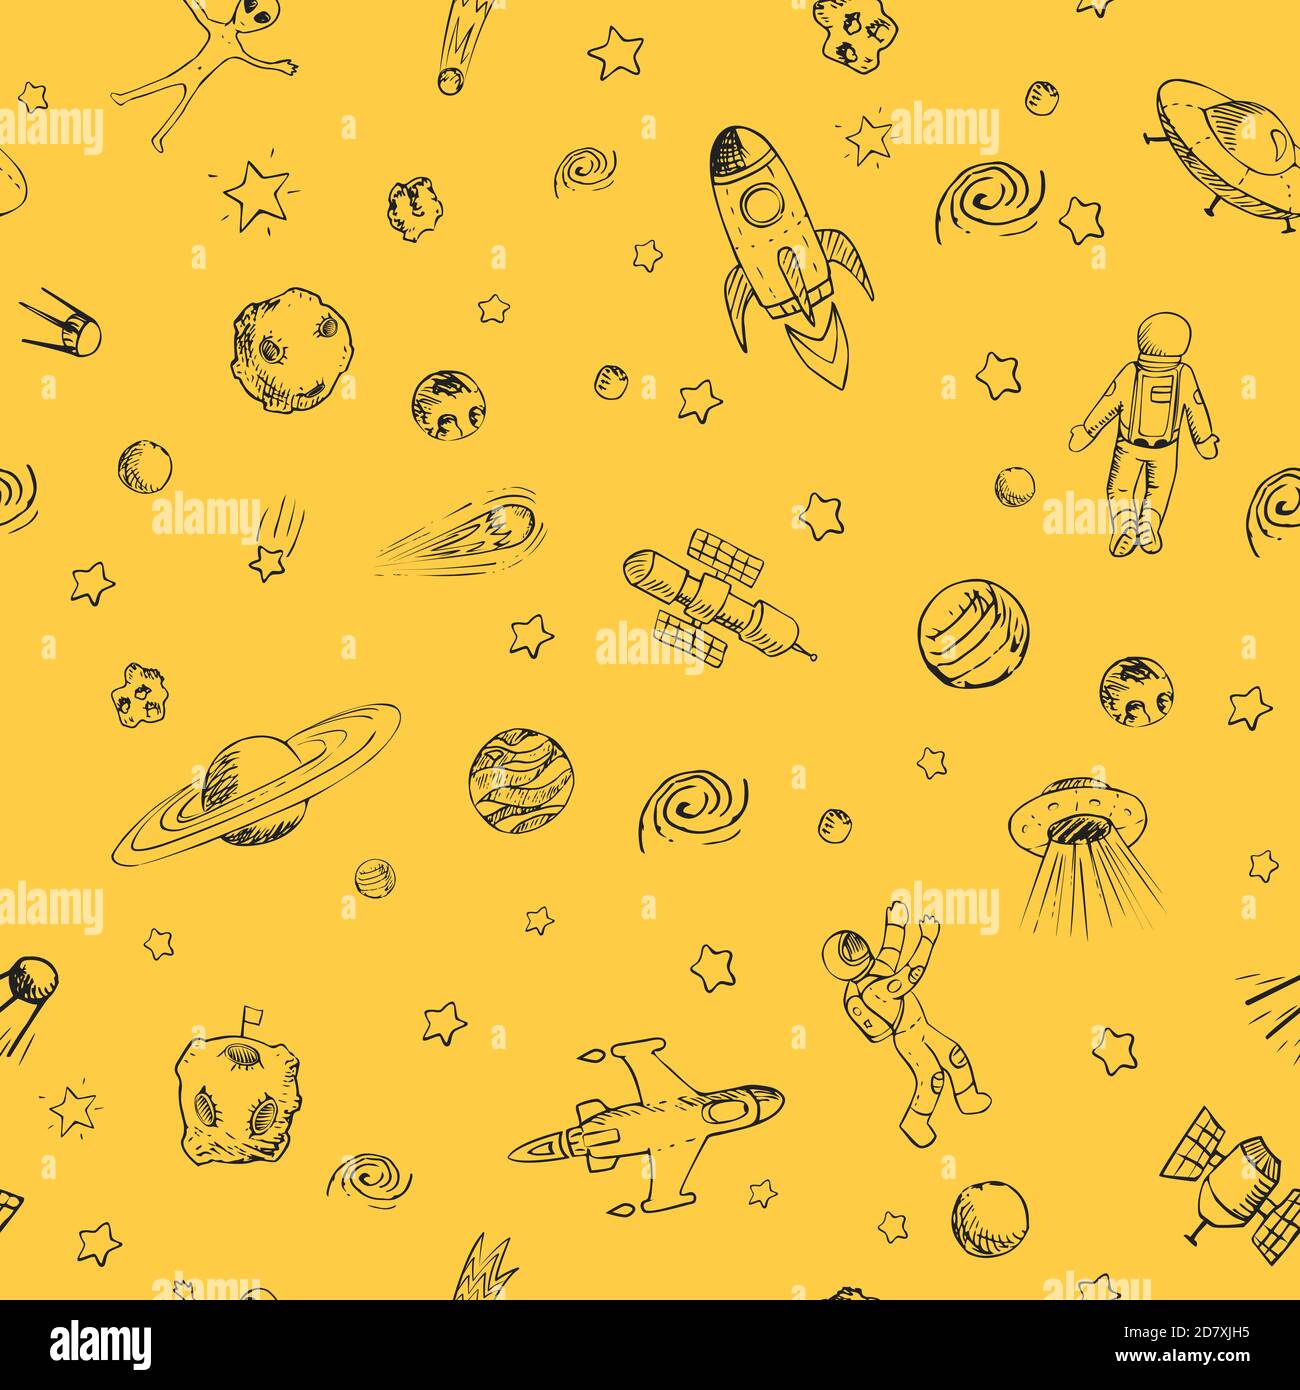 Vektor Doodle Raum nahtlose Muster mit Raum-Objekte. Raumschiffe, Raketen, Planeten, fliegende Untertassen, Kosmonauten, Sterne, Kometen, Satelliten, ufo etc Stock Vektor